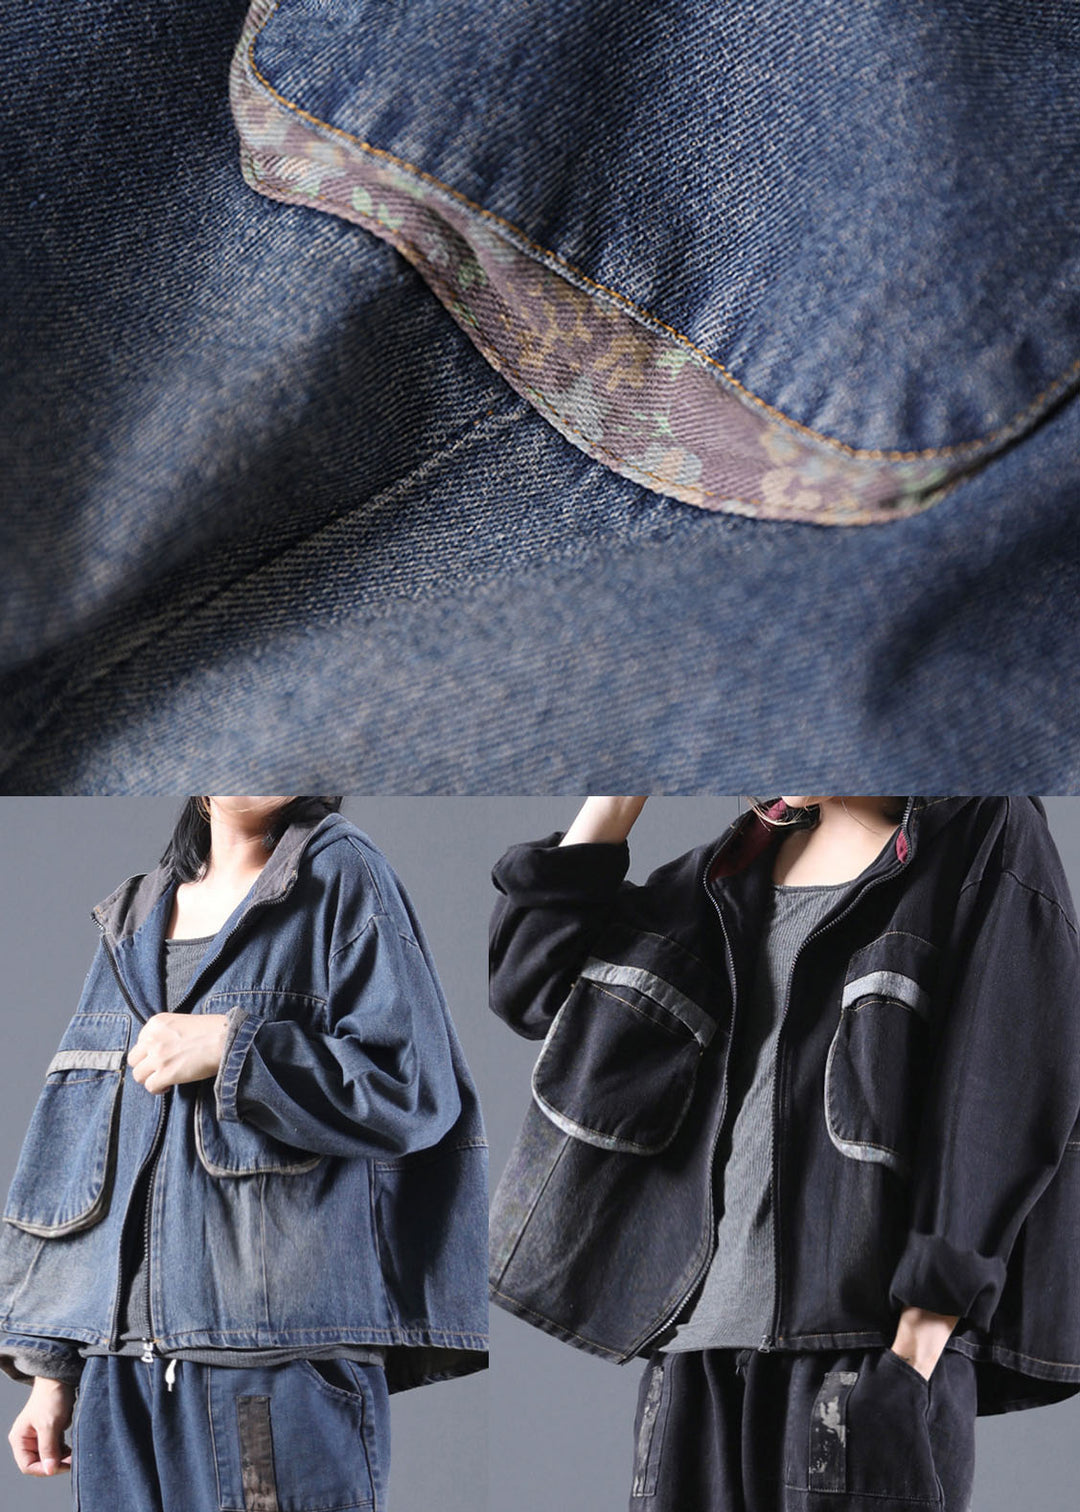 Handmade Black Hooded denim Coats Spring